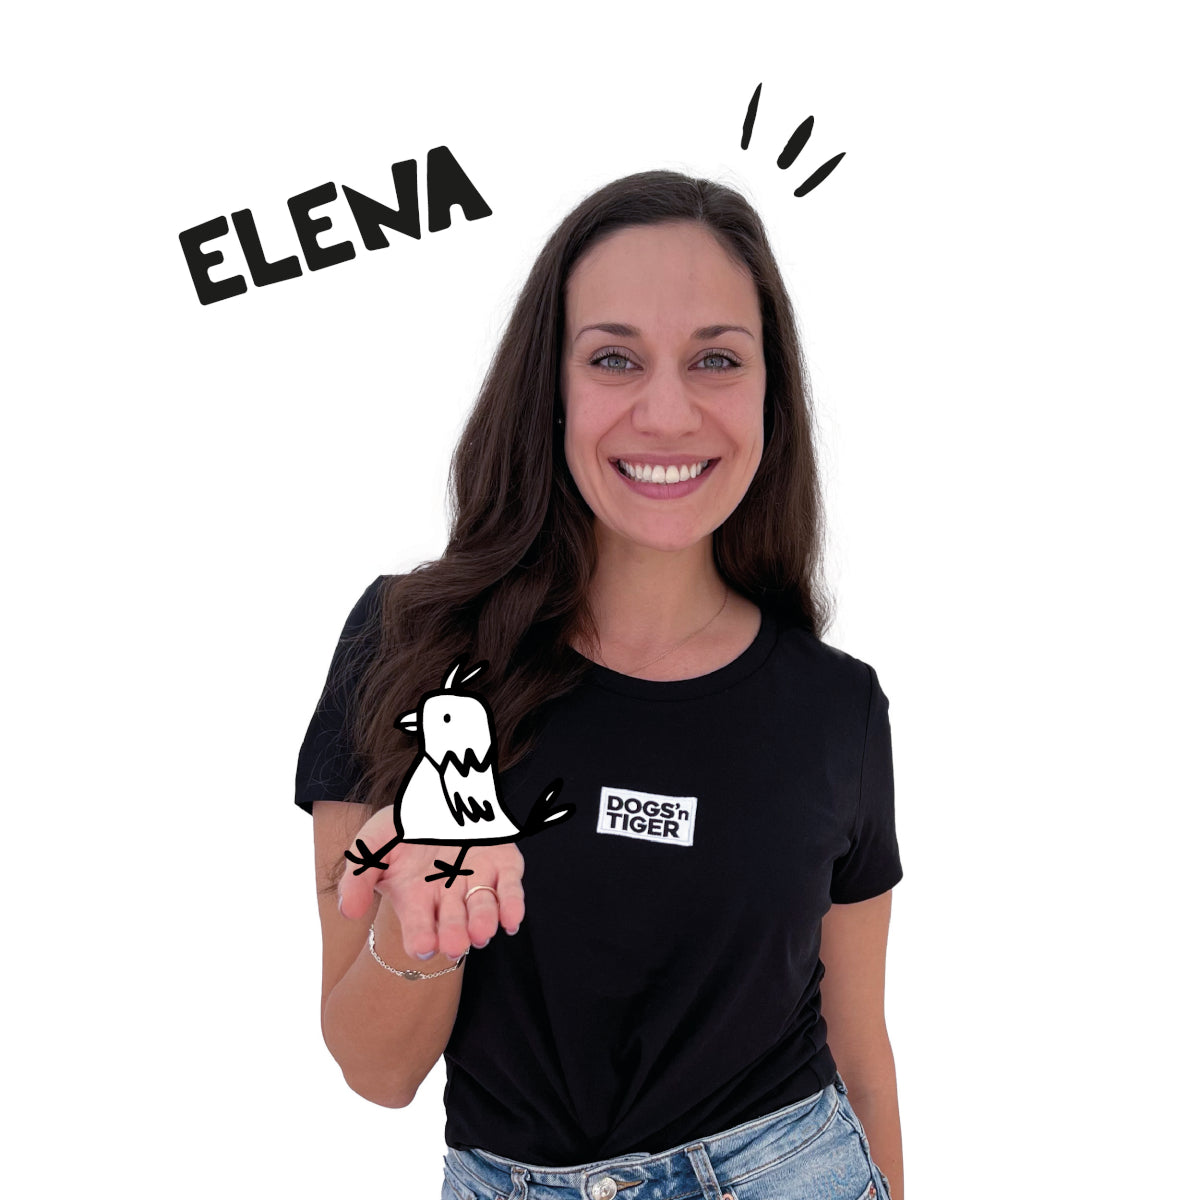 Foto von Elena in schwarzem Shirt mit Dogs' Tiger Logo